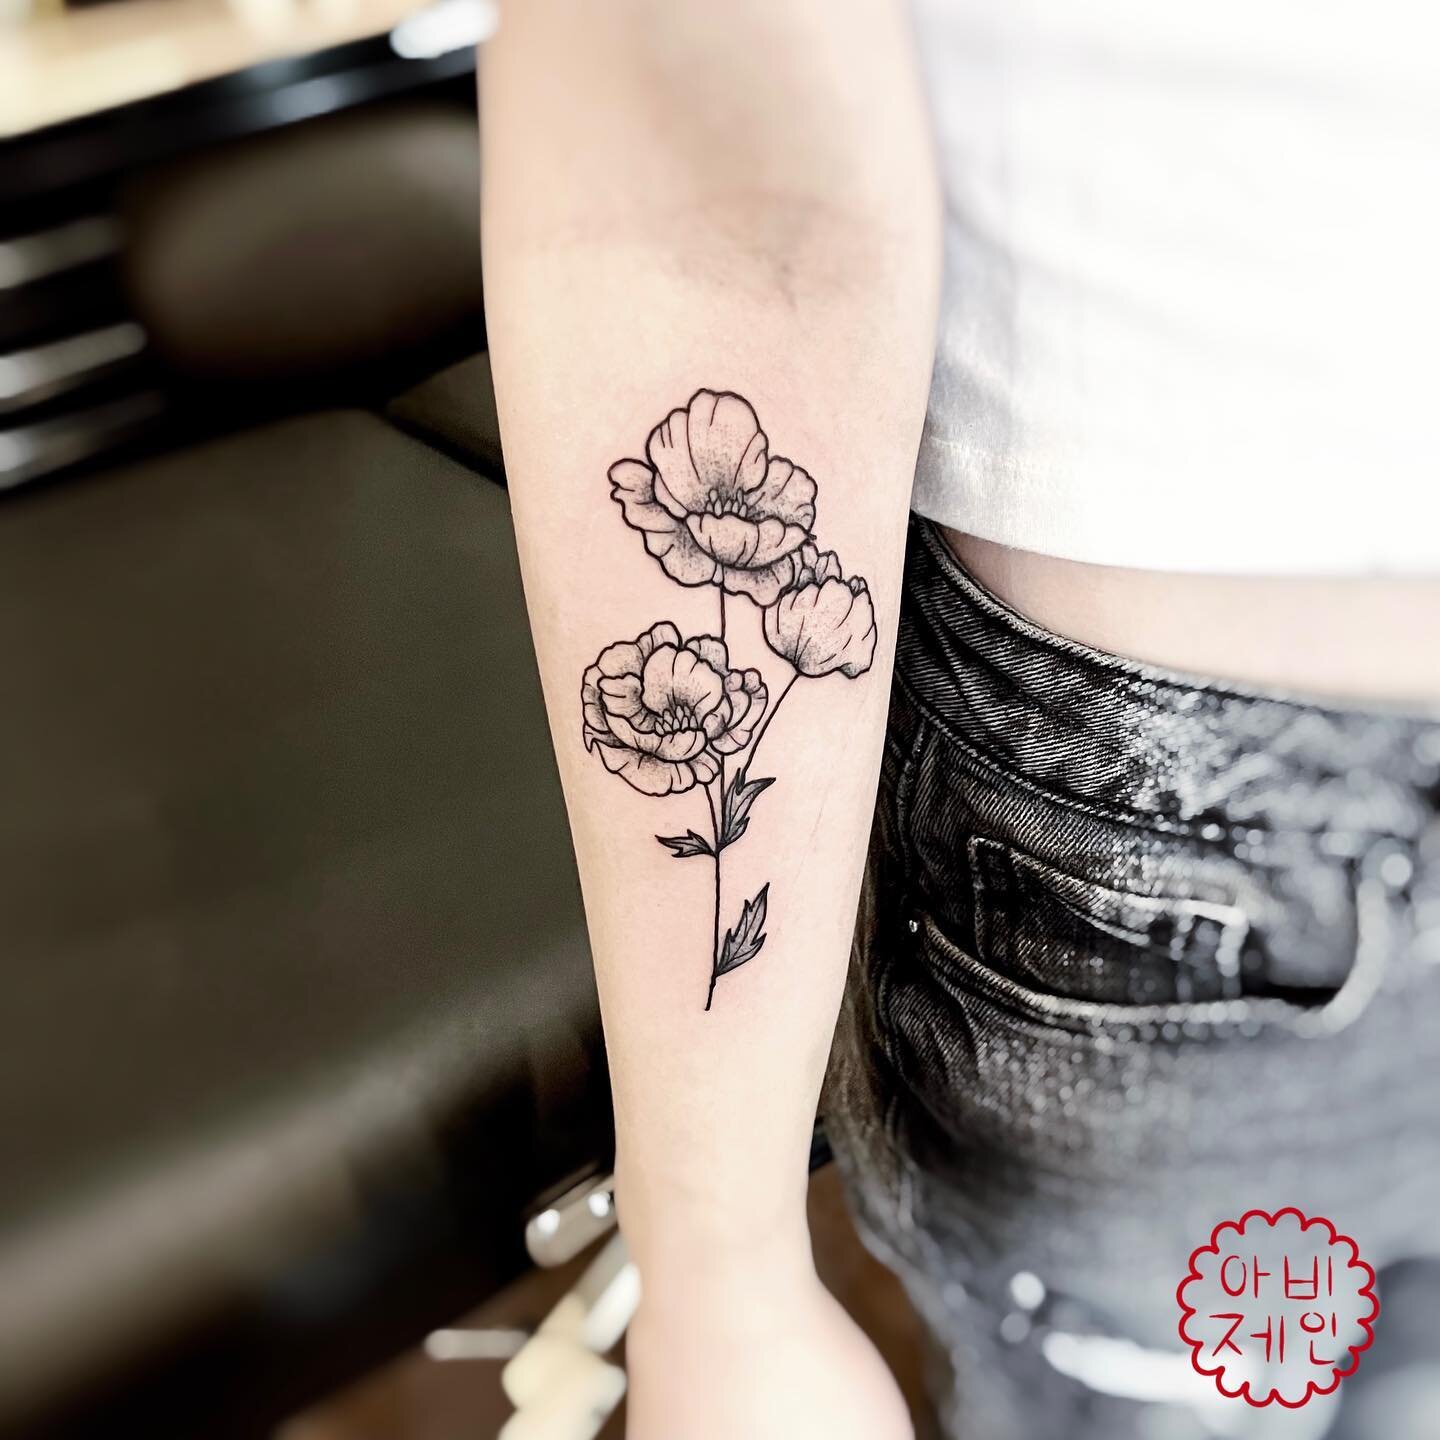 Thank you&hellip;.🌼

#tattoo #flashtattoo #flashtat #ink #inked #tattoodrawing #drawing #linework #lineworktattoo #tattooartist #artist #tattooart #art #tattooing #minneapolis #minneapolistattoo #minneapolistattooartist #minnesota #minnesotatattoo #